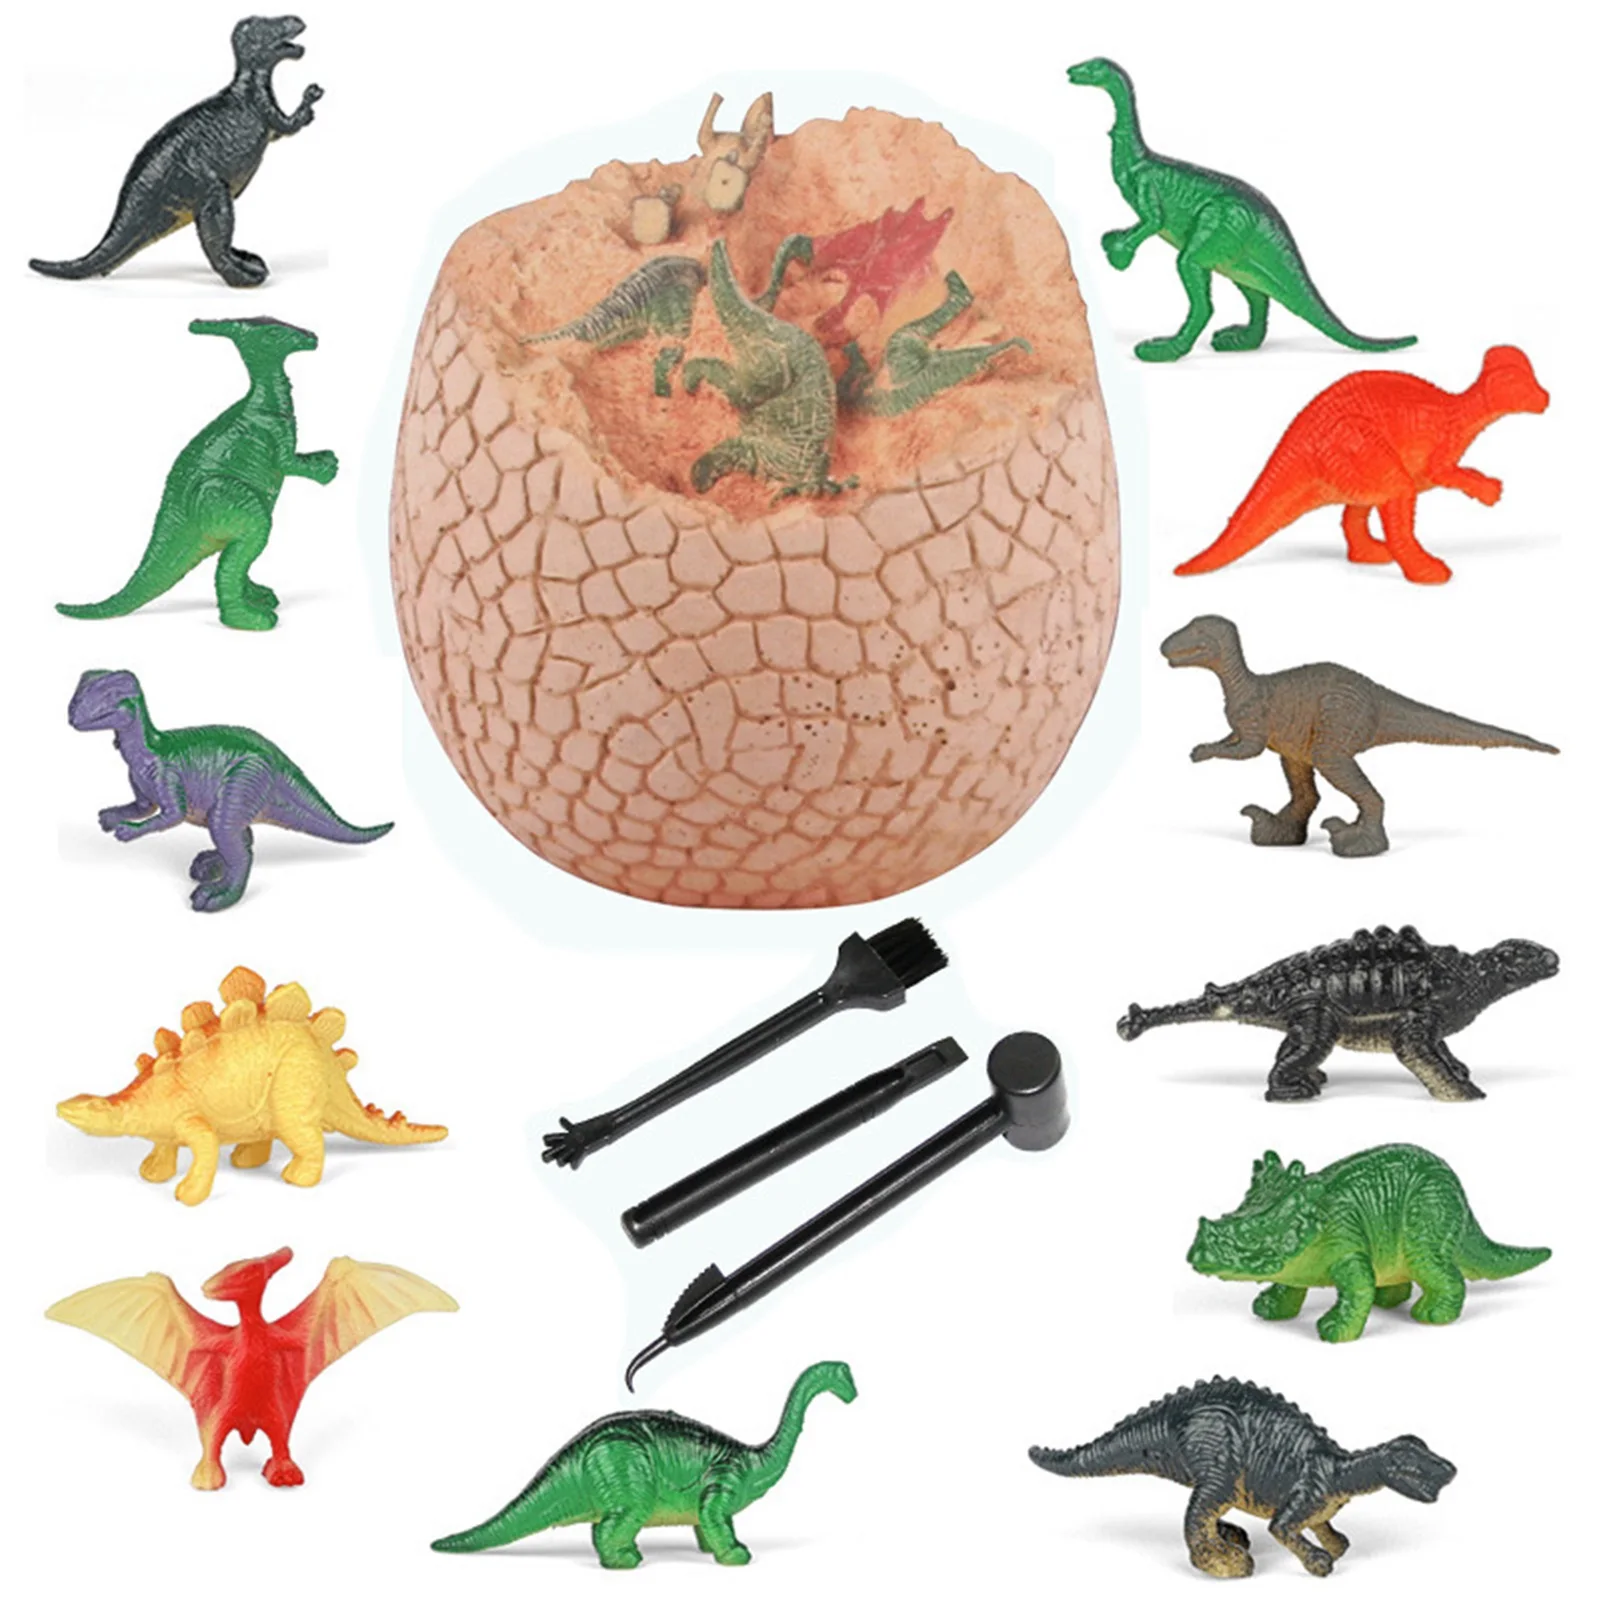 Dinosaur Egg Dig Kit Easter Egg Dinosaur Toys For Kids Children's Educational Toy Dinosaur Egg Excavation Toy Science